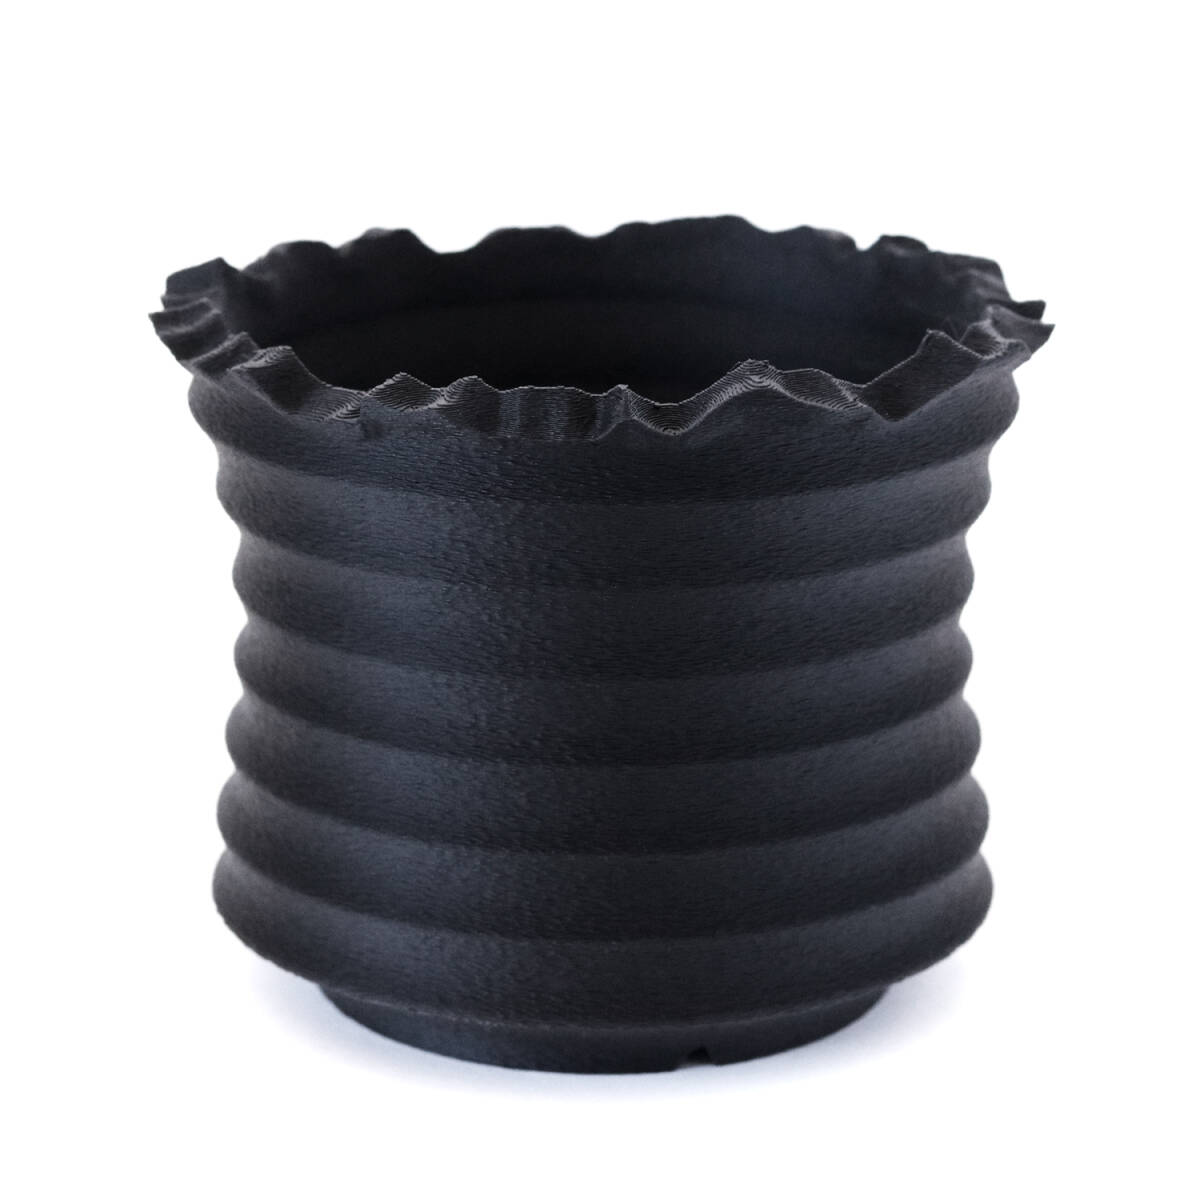 Adv-037-2 (115×95) Ripple Pot 植木鉢 おしゃれ 水捌け シンプル 黒 プラ鉢 多肉植物 塊根植物 観葉 ブラック 3d鉢 排水 通気性 作家鉢_画像2